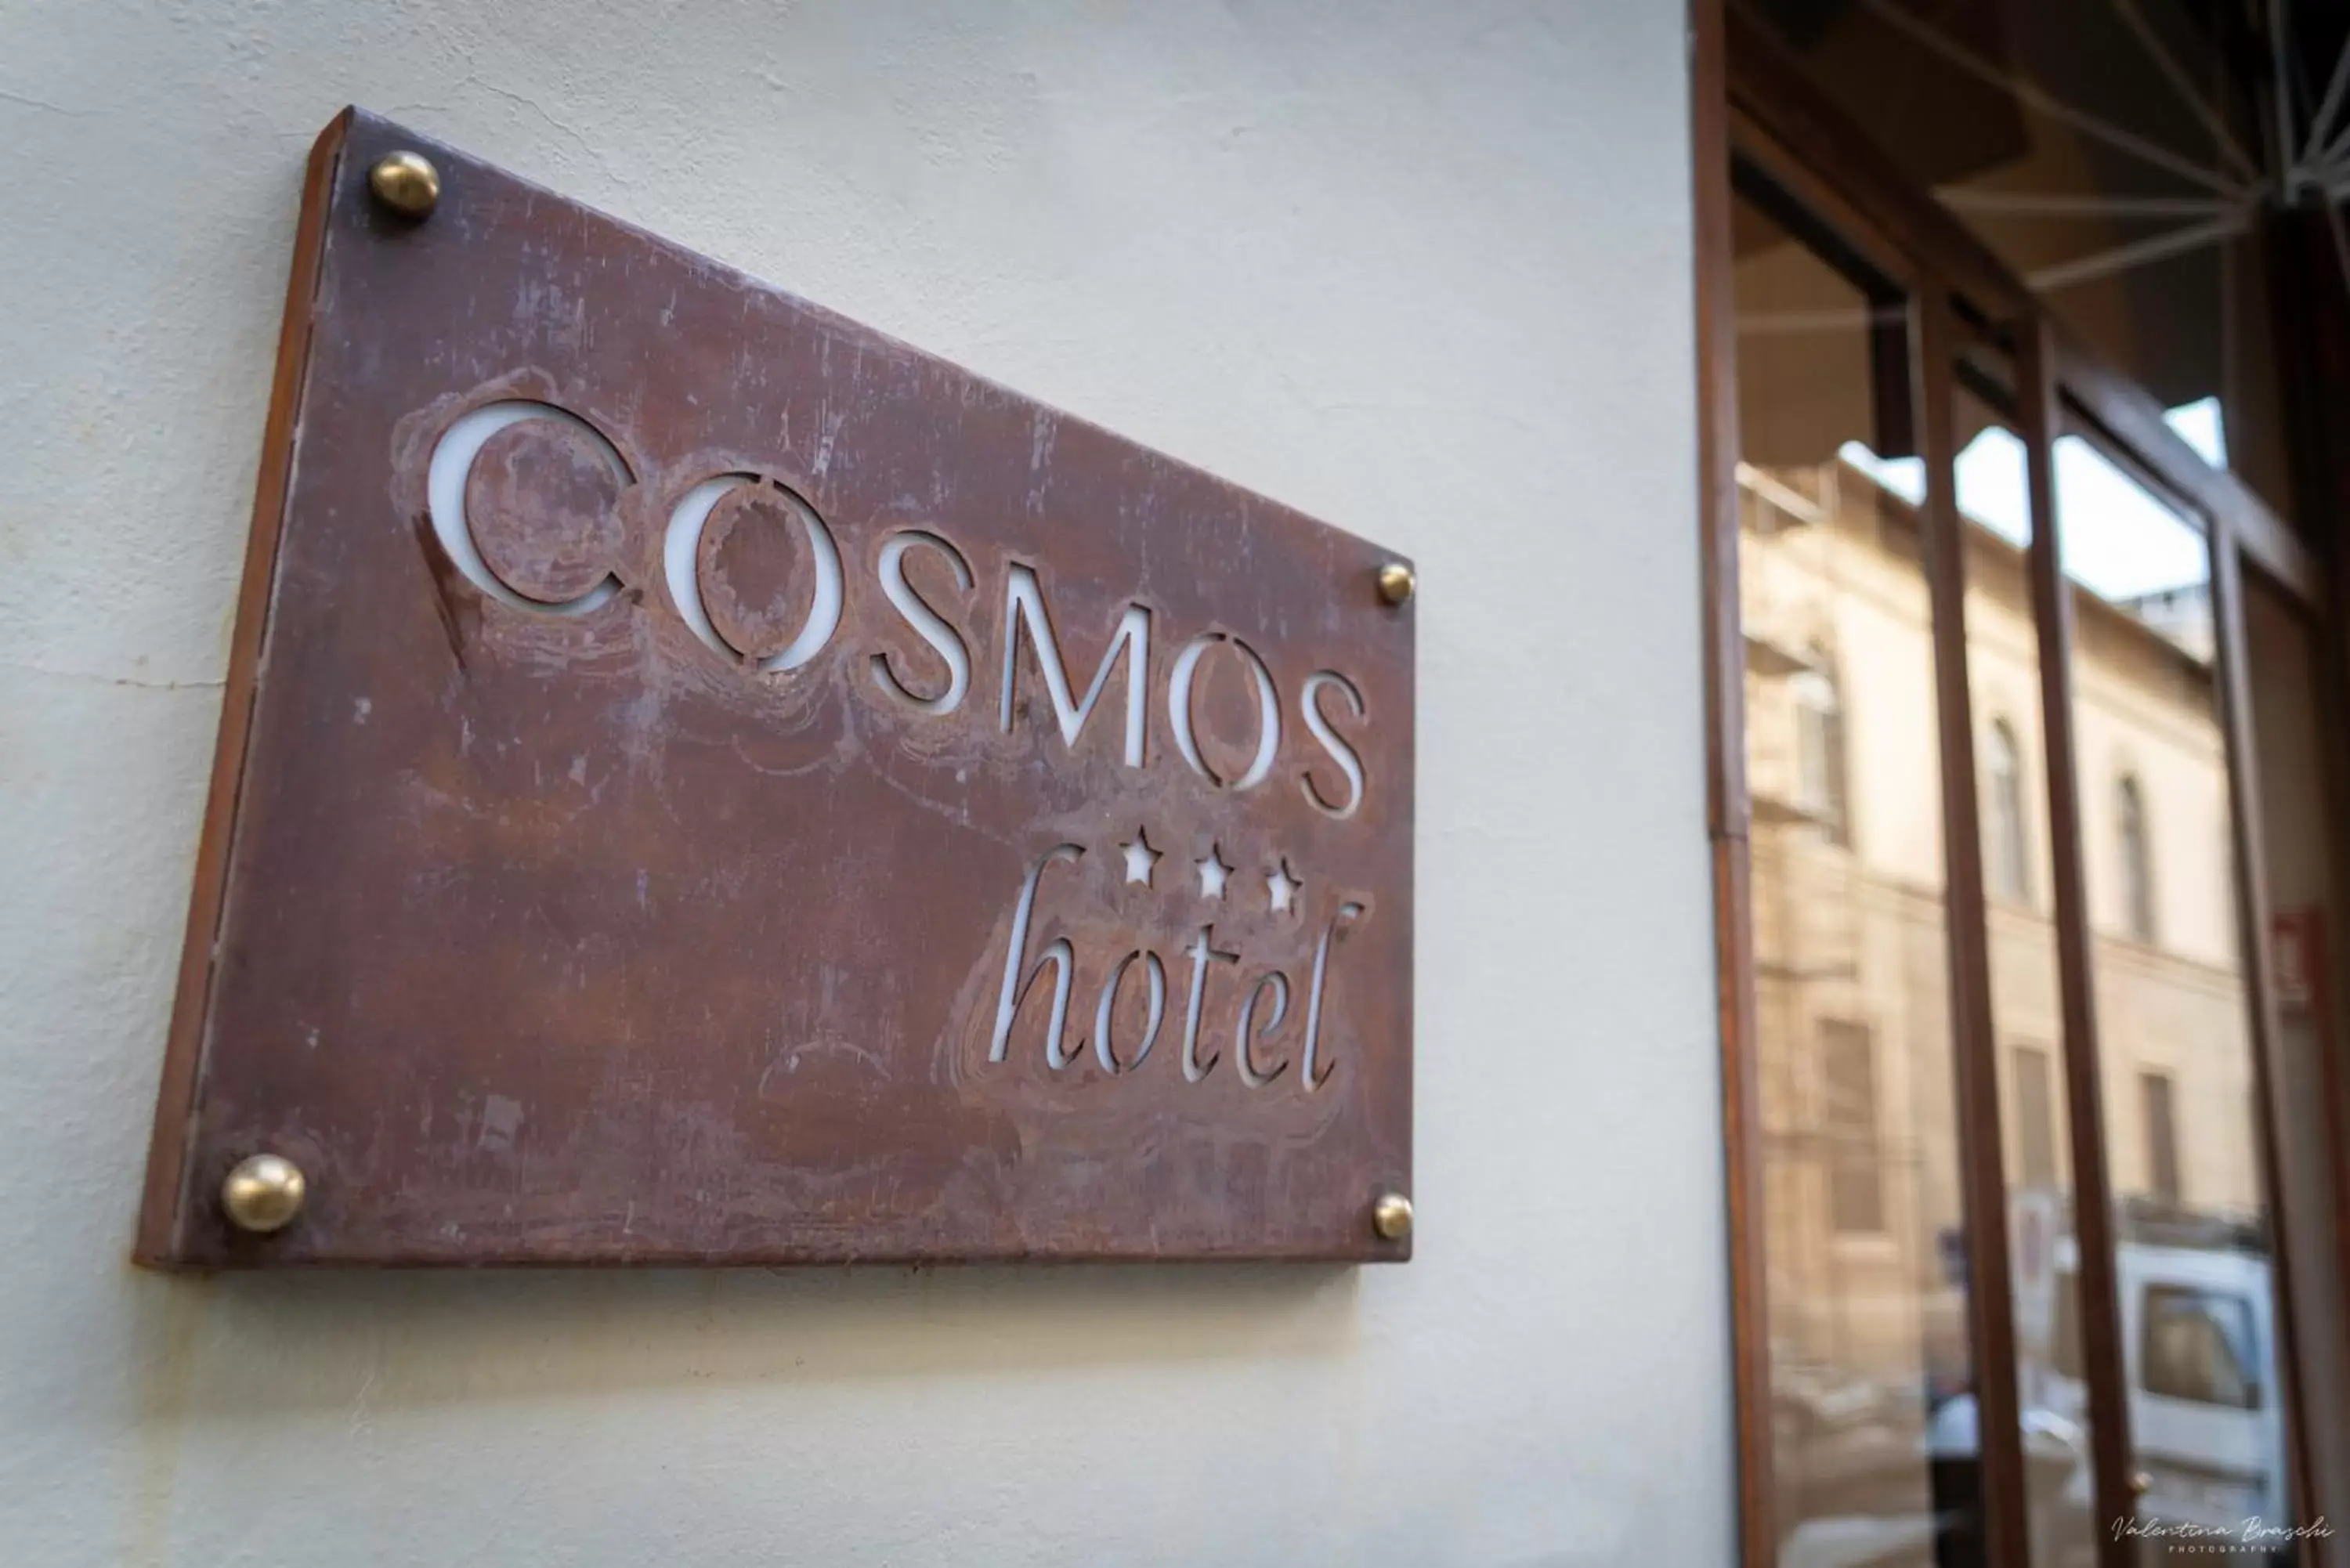 Property building in Hotel Cosmos